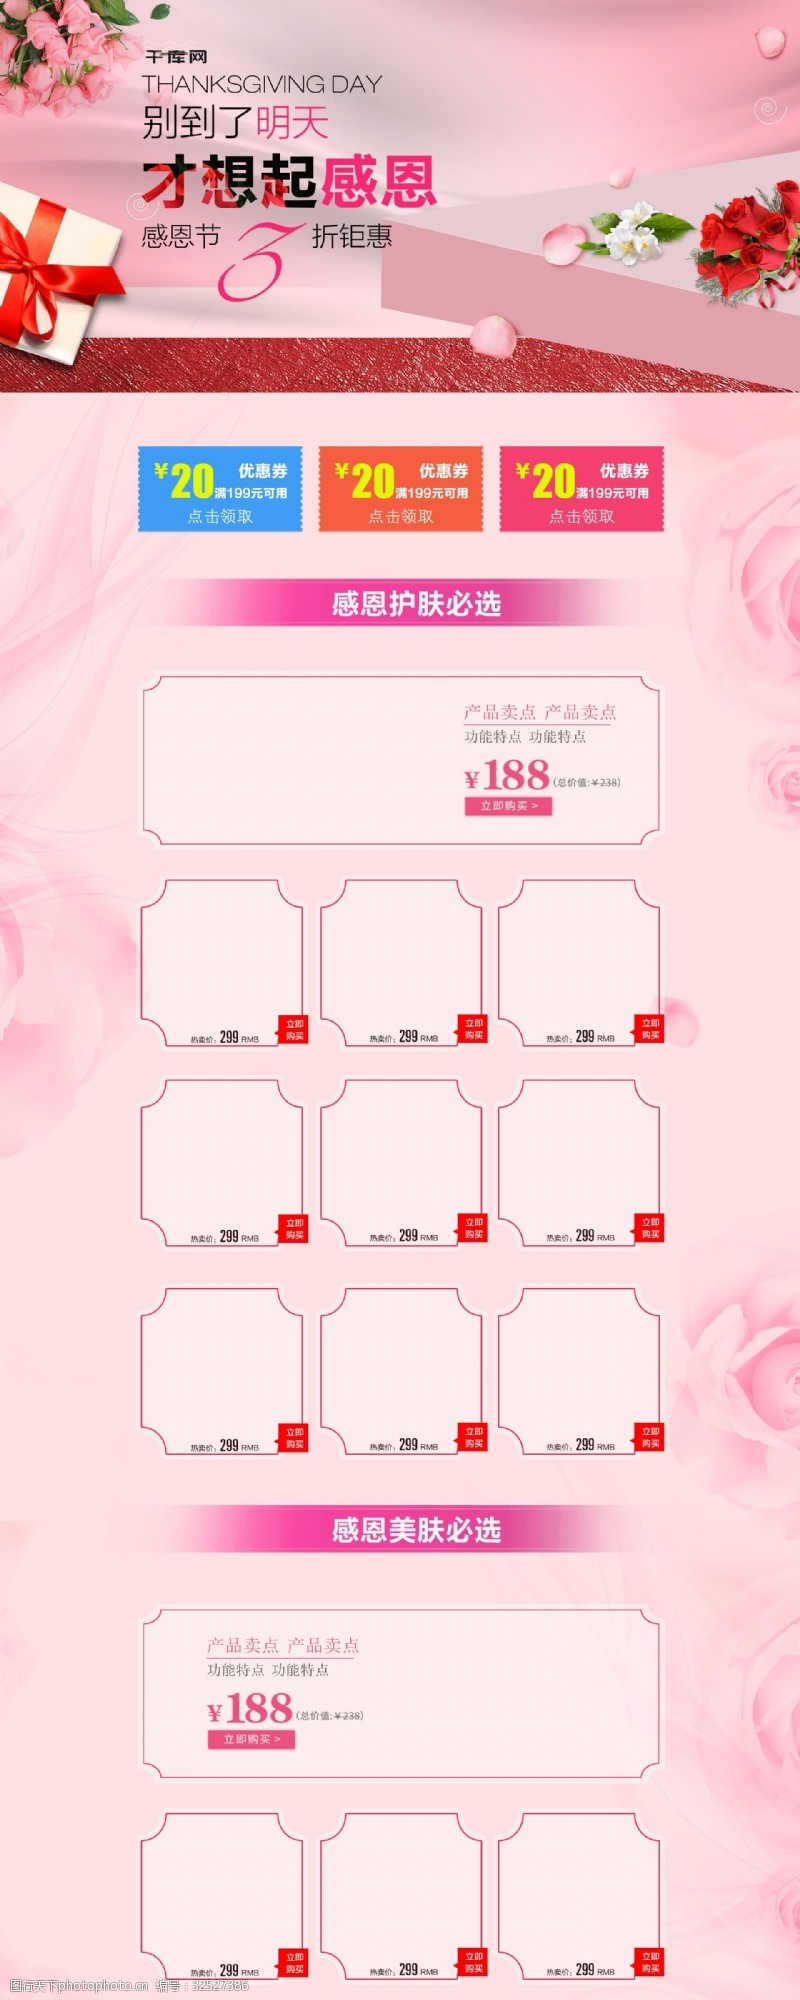 钜惠活动粉红色温馨鲜花感恩节美妆洗护首页模板